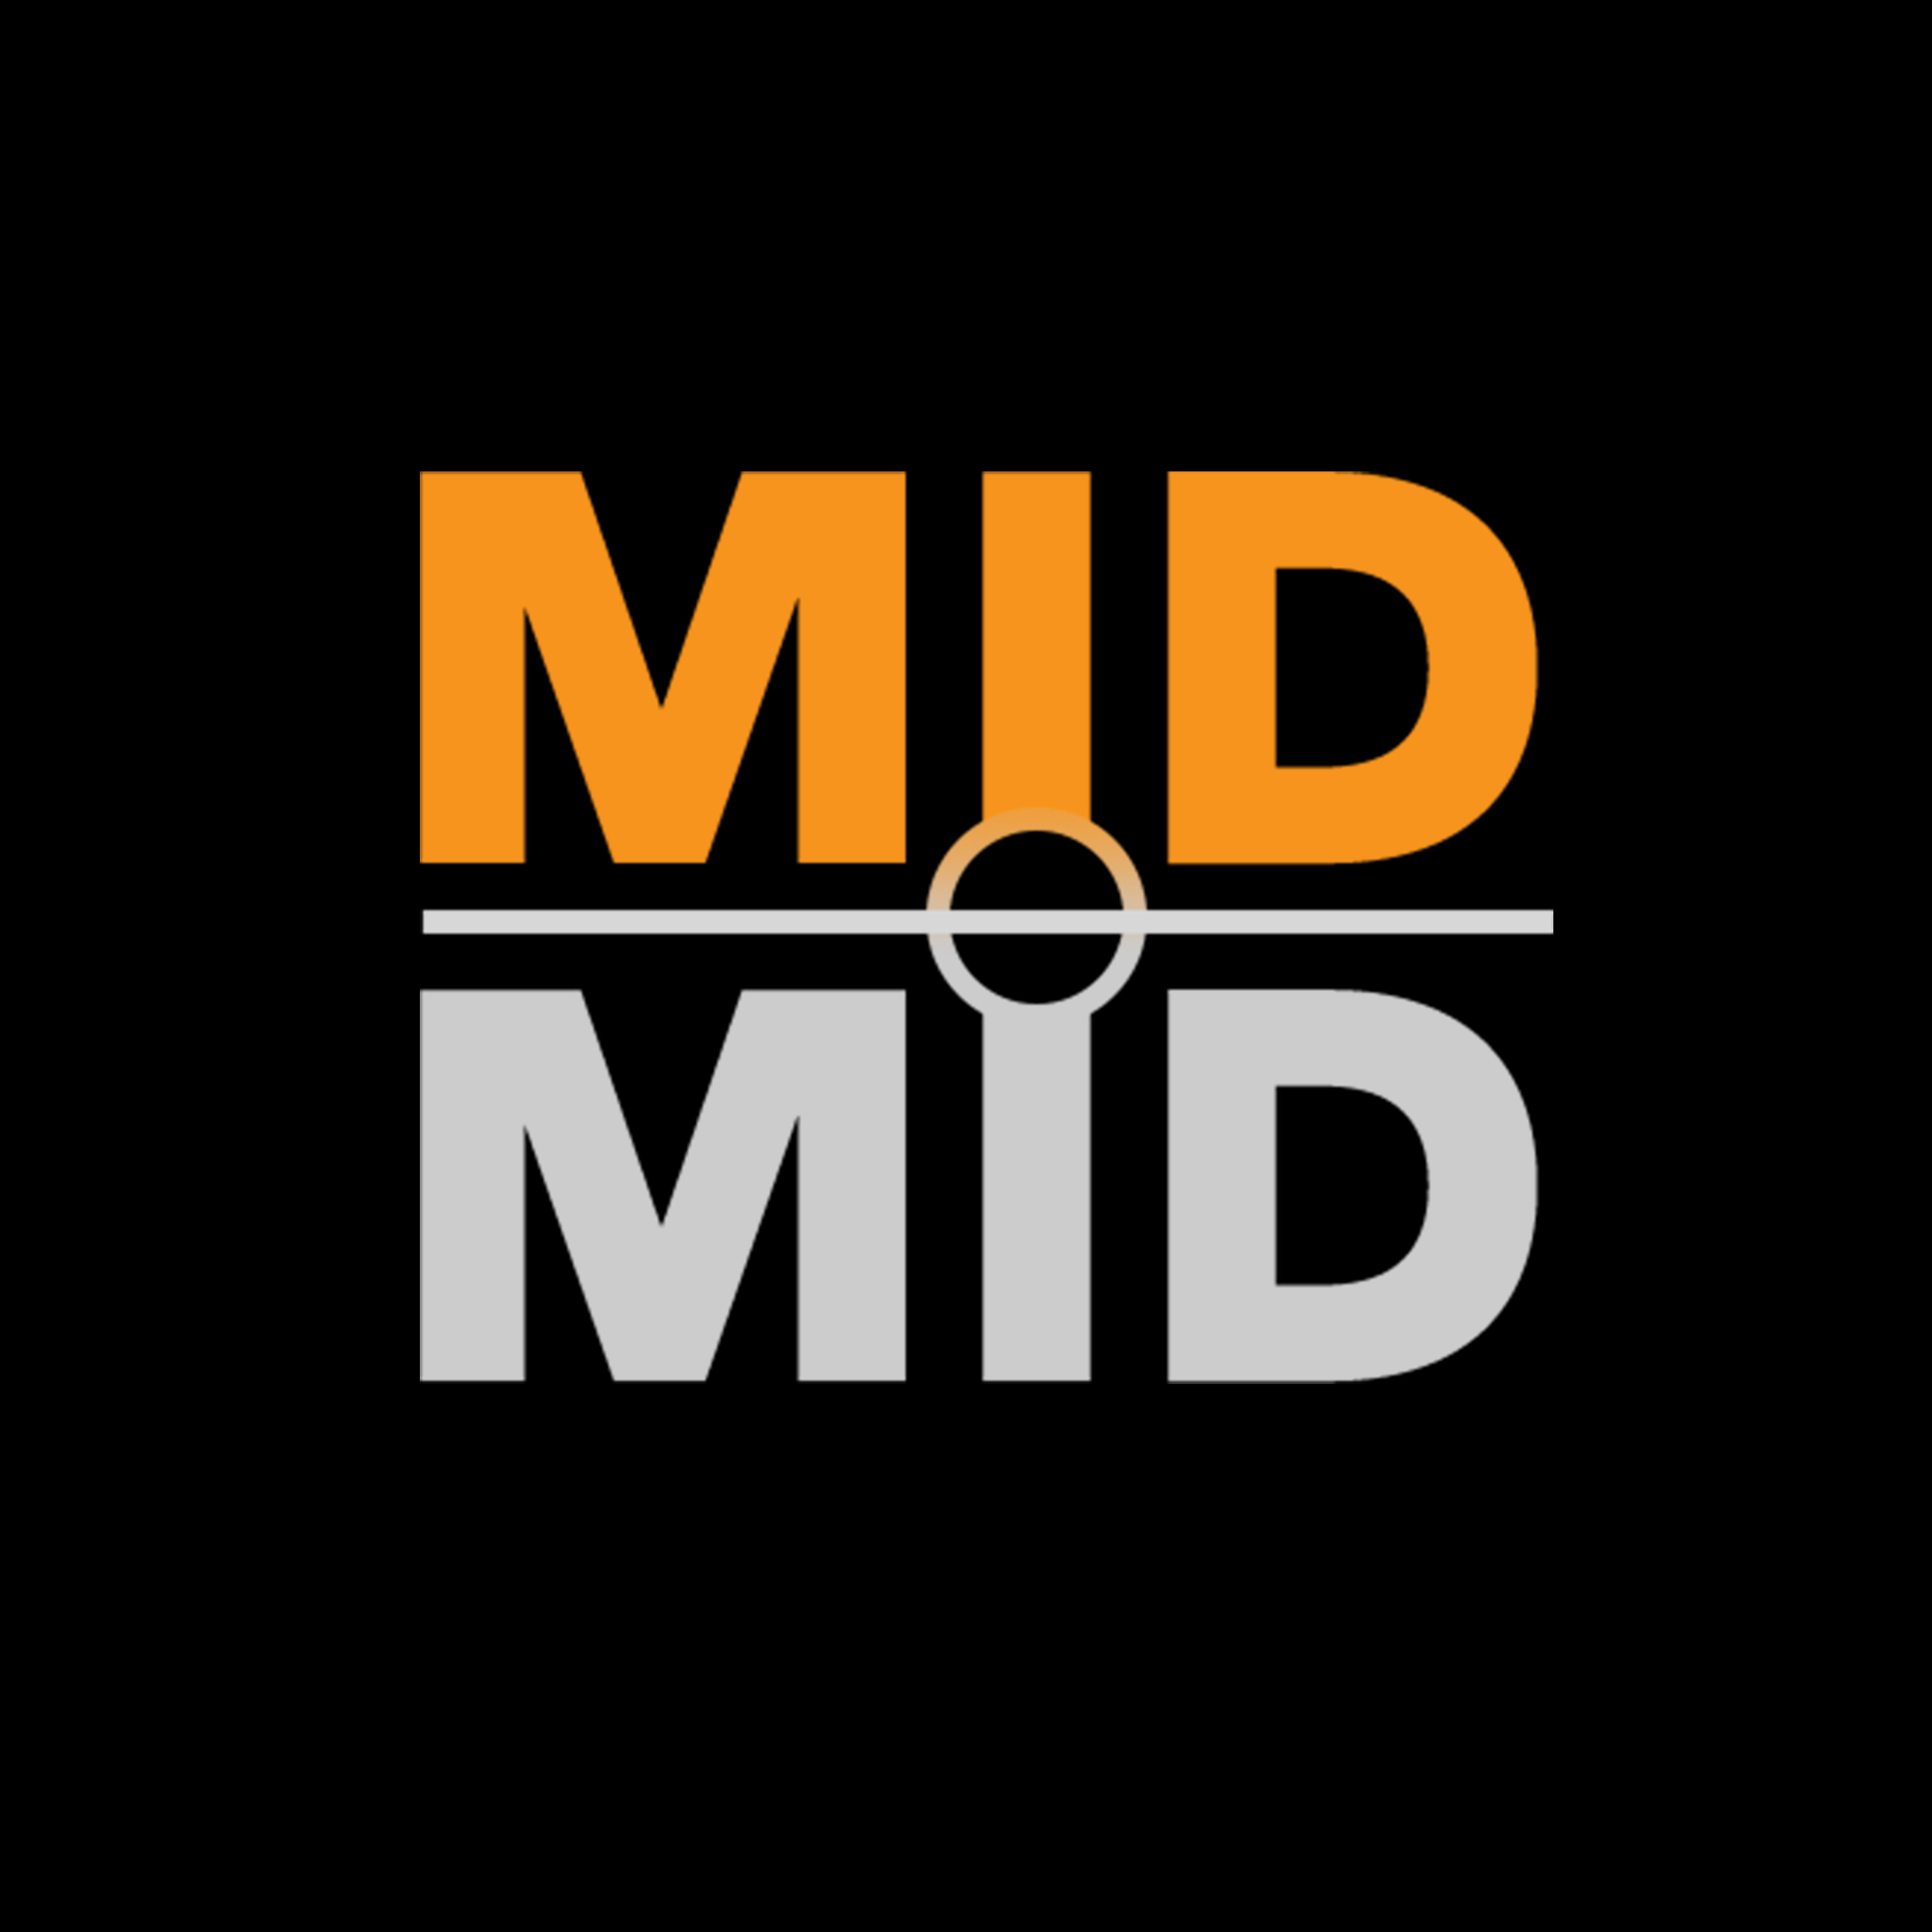 MIDMID - Youri Mulder, niet geschoten is altijd mis